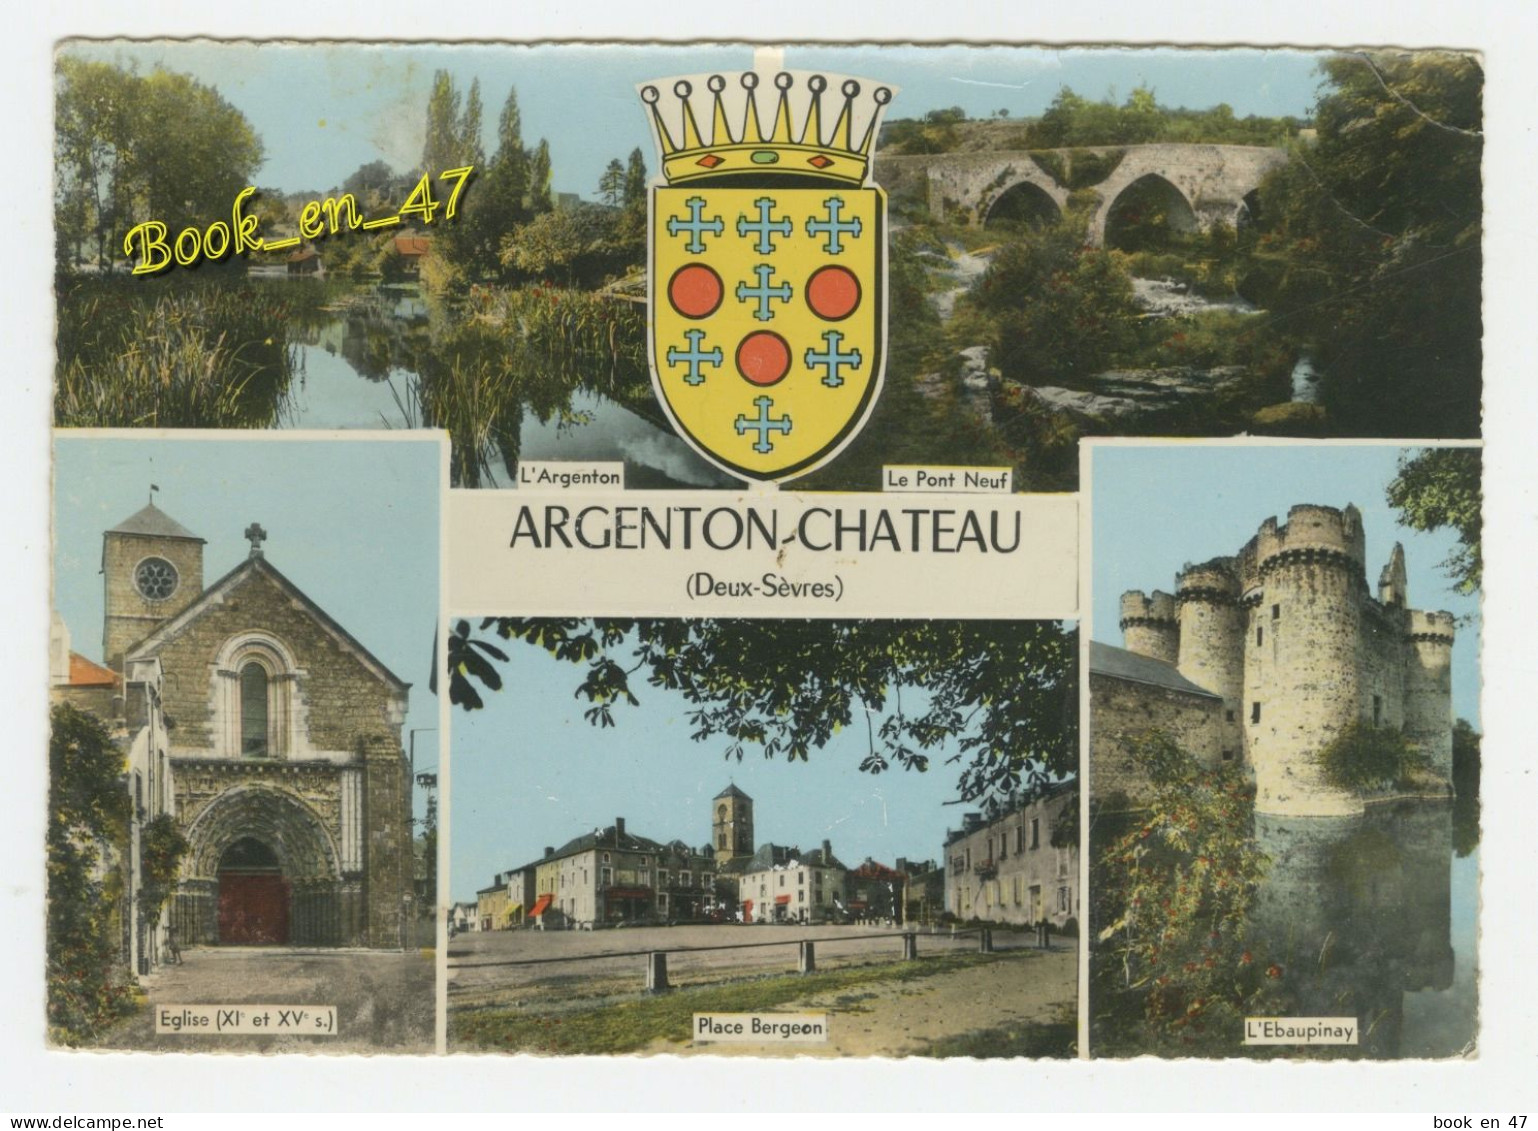 {91175} 79 Deux Sèvres Argenton Château , Multivues ; Le Pont Neuf , L' Ebaupinay , Eglise , Place Bergeon , L' Argenton - Argenton Chateau